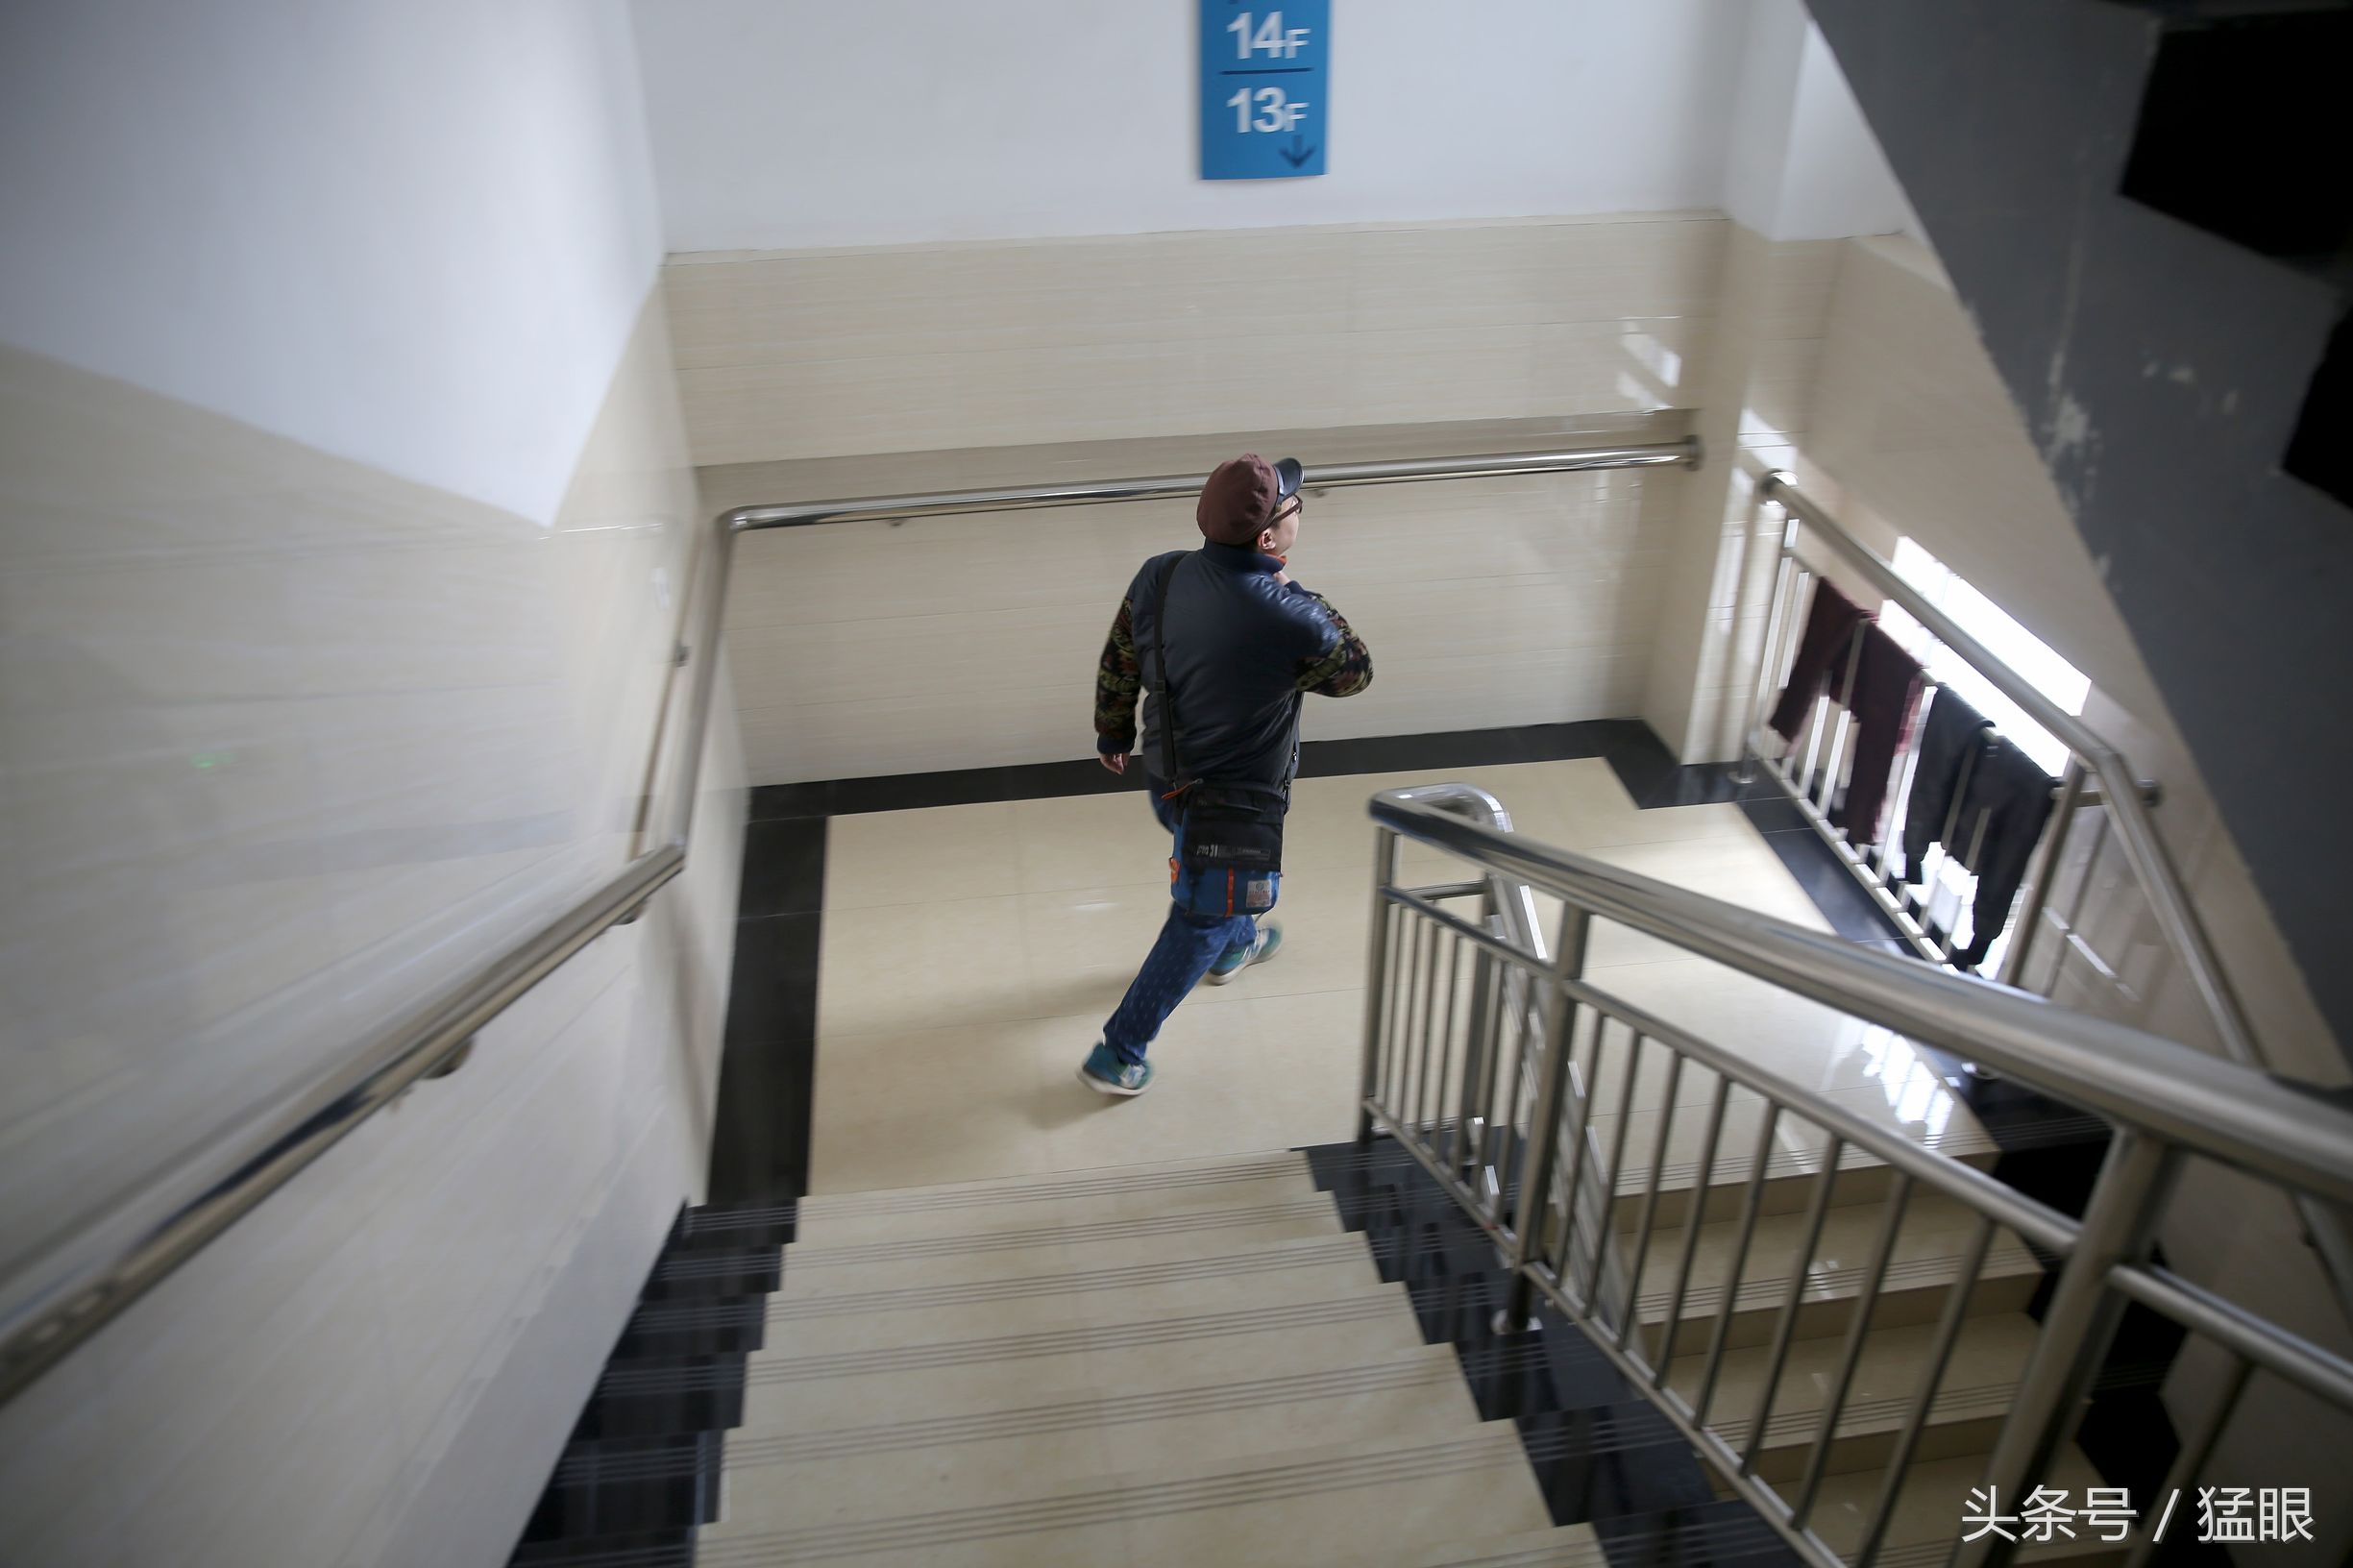 由于医院电梯人流量较大,吴宏源经常走楼梯去楼下看望岳父.